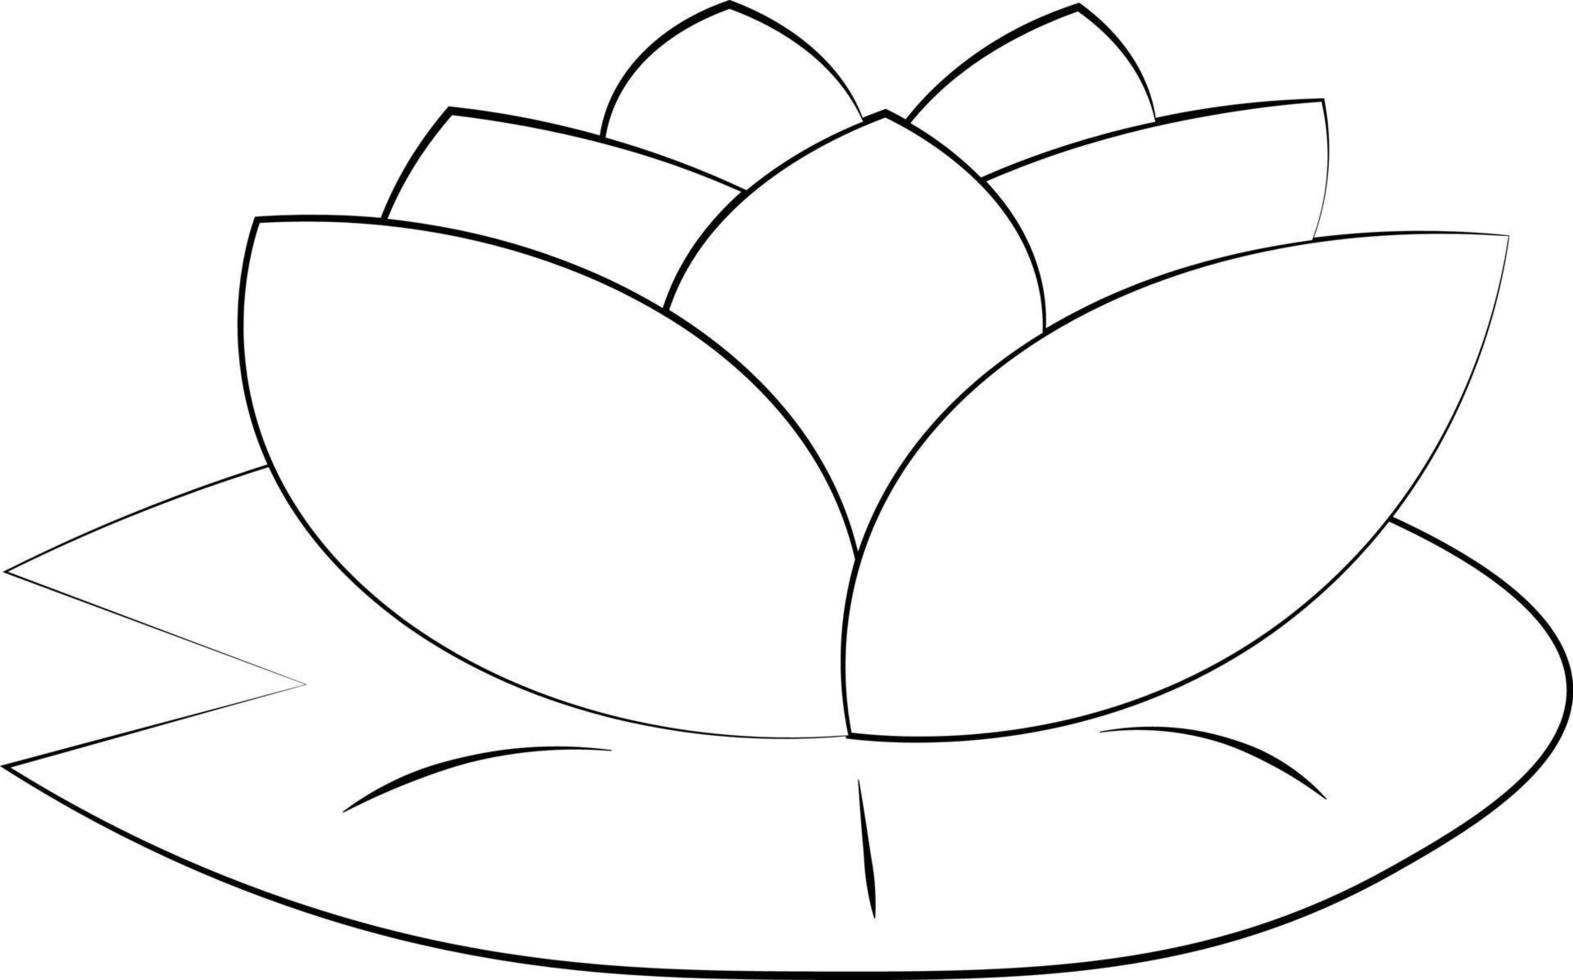 waterlelie met één element. illustratie in zwart-wit tekenen vector